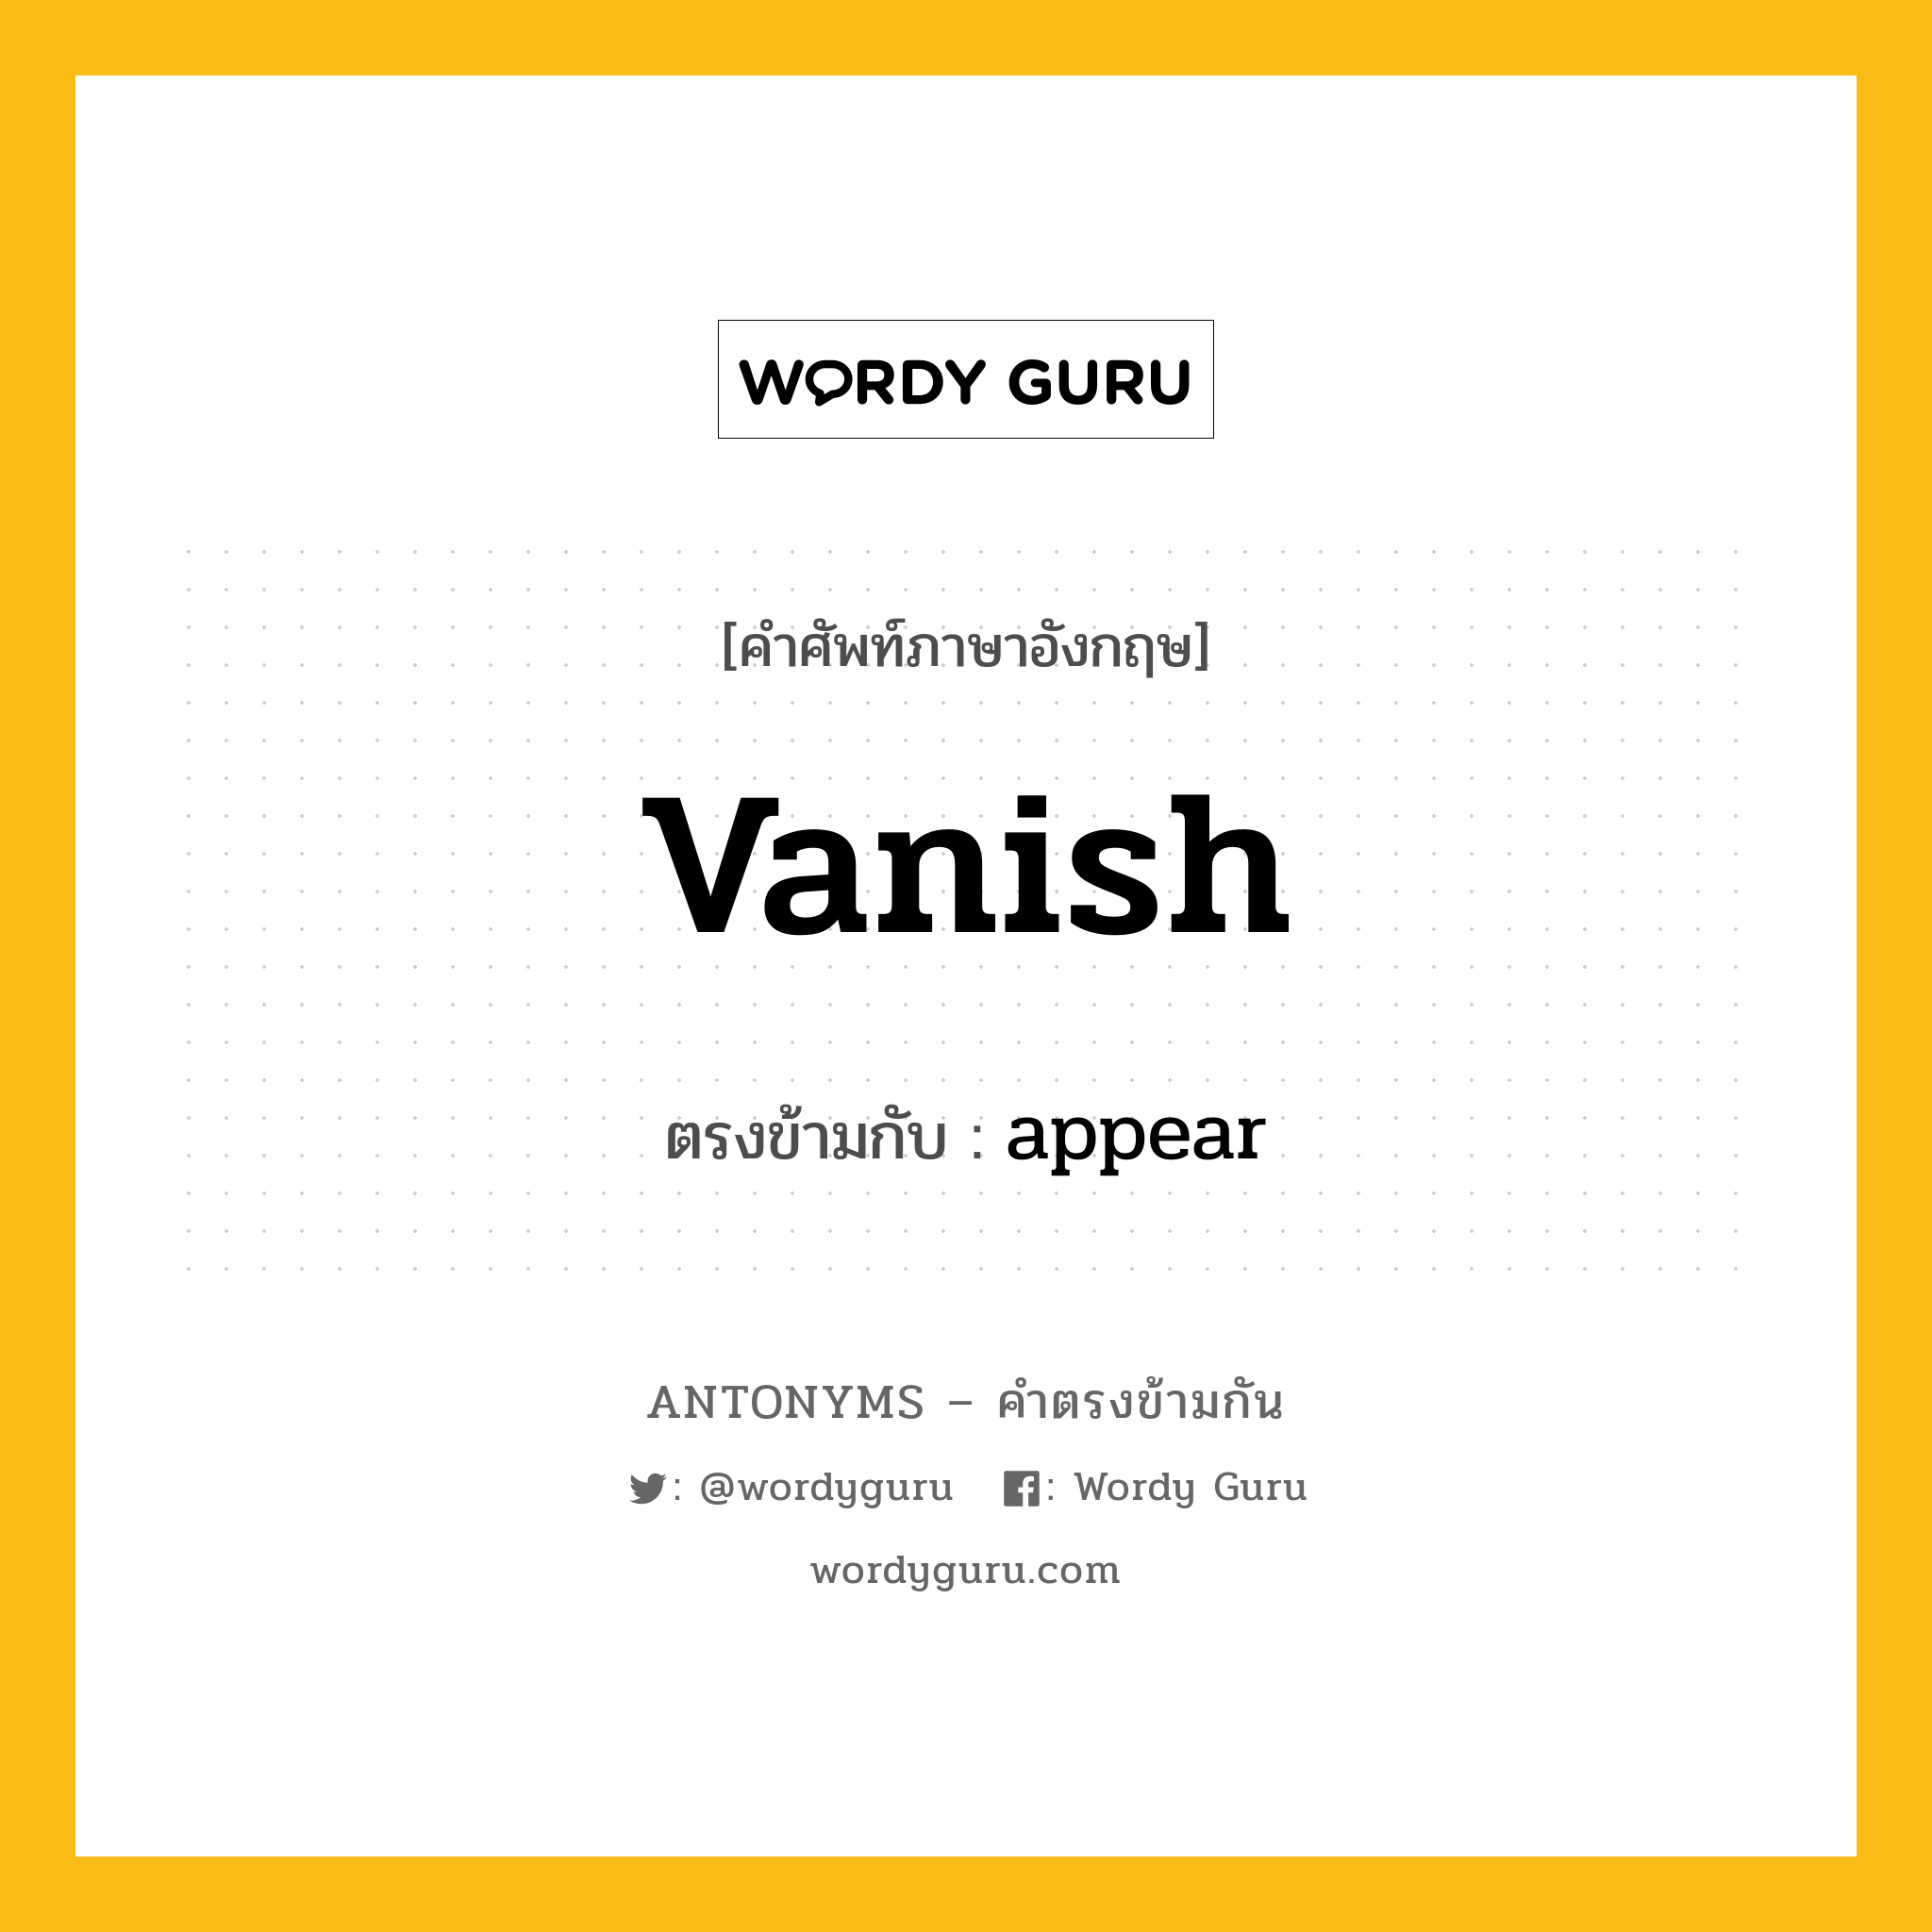 vanish เป็นคำตรงข้ามกับคำไหนบ้าง?, คำศัพท์ภาษาอังกฤษ vanish ตรงข้ามกับ appear หมวด appear